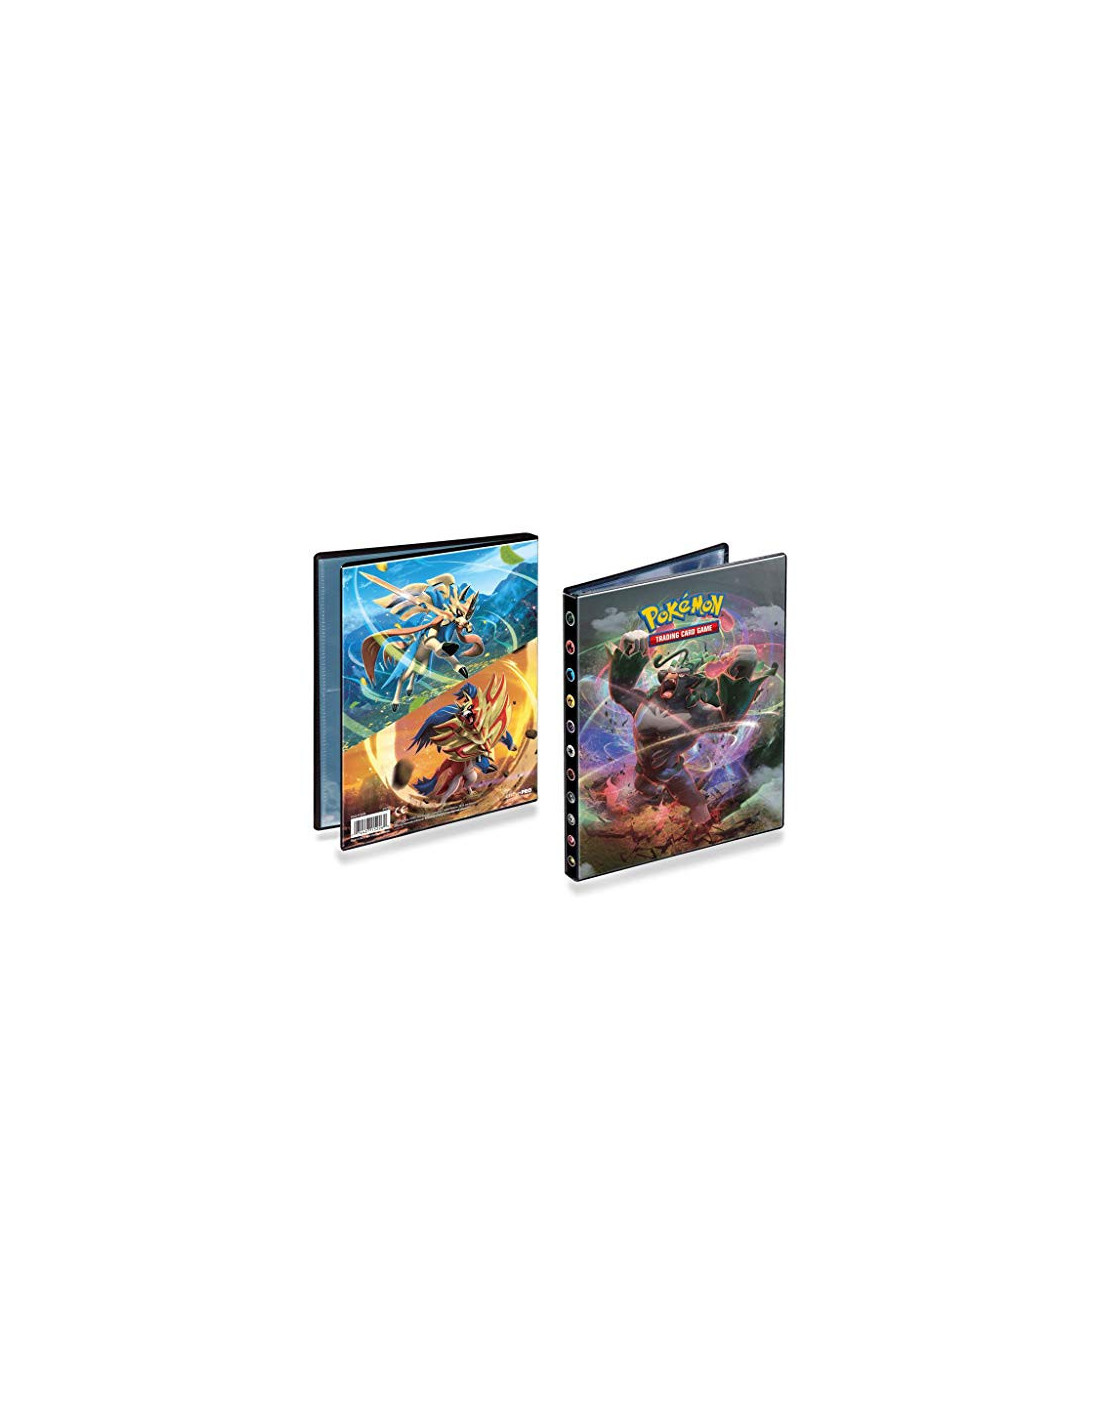 Cahier range-cartes Pokémon Epée & Bouclier 7 - A5 80 cartes - Jeux